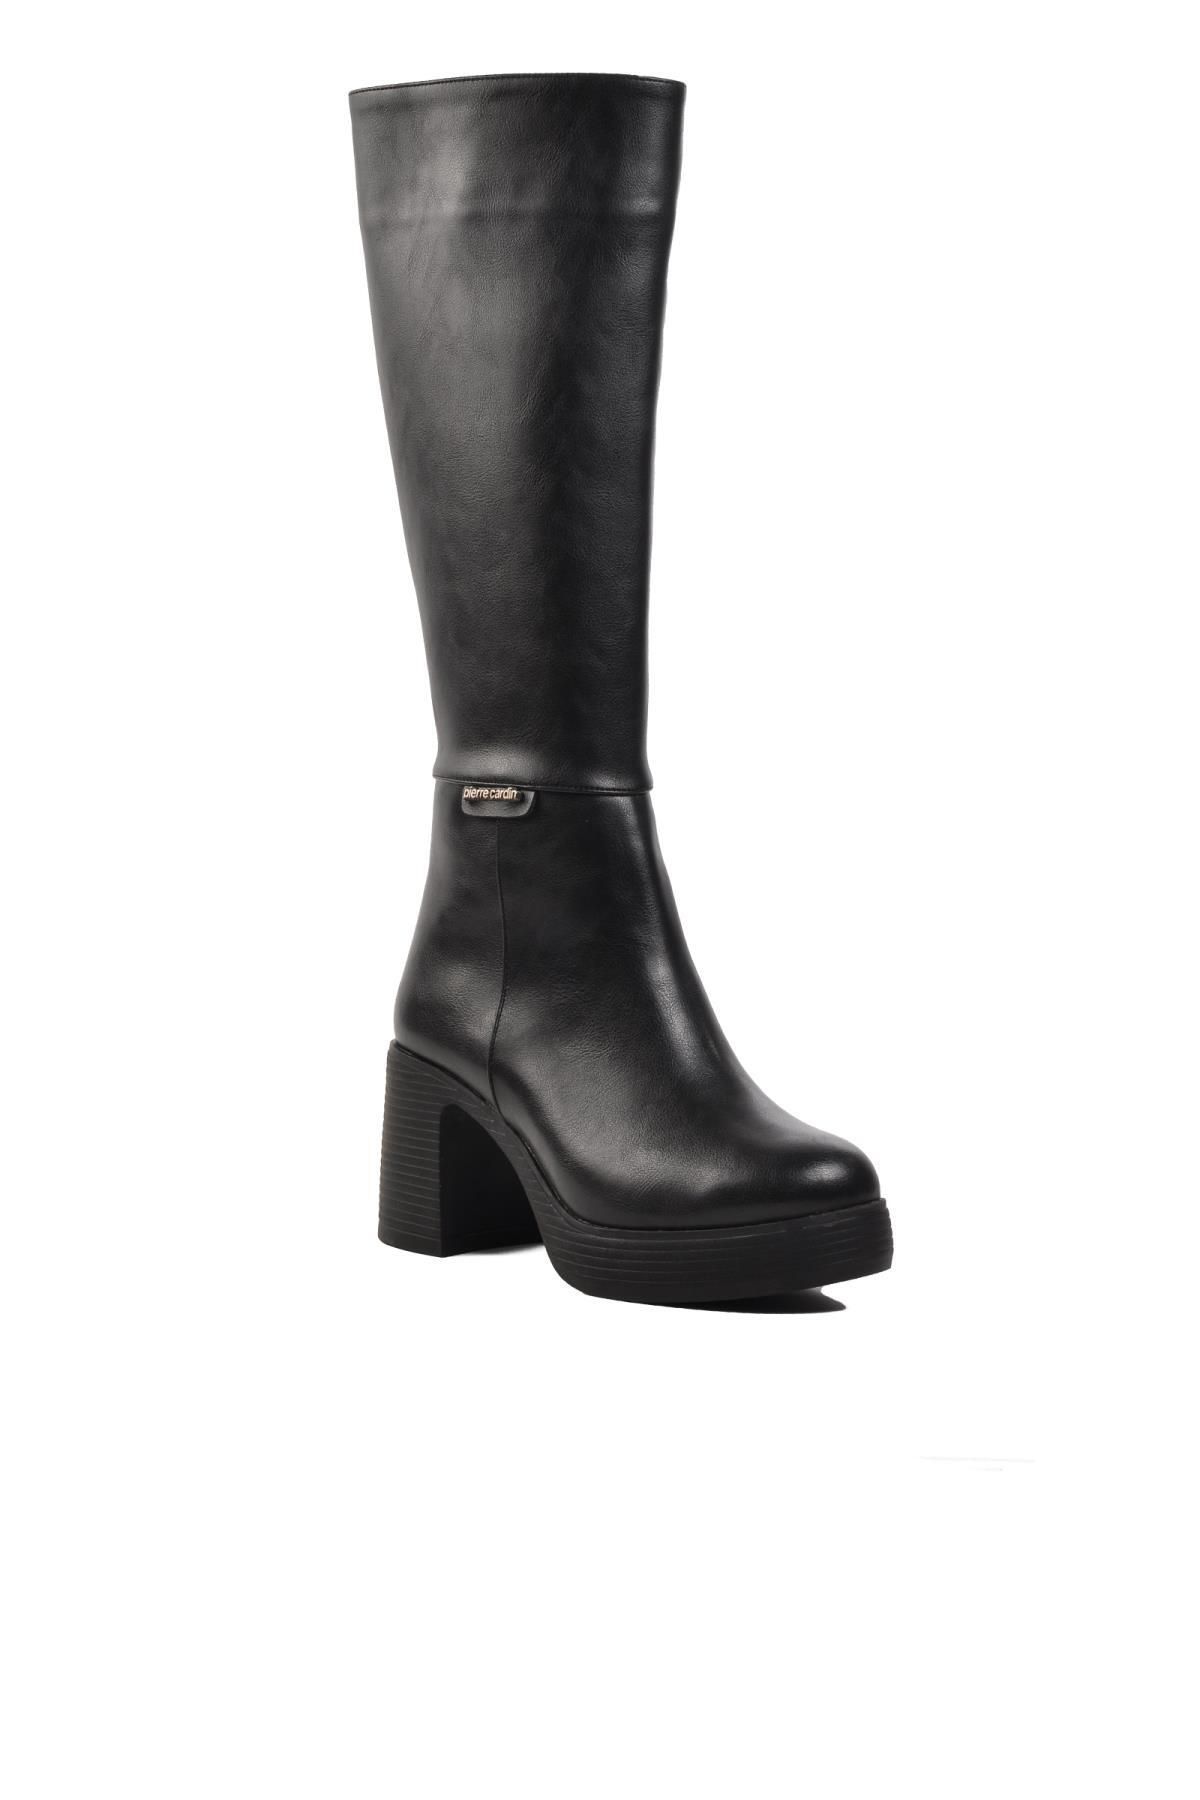 Pierre Cardin Pc-52424 Siyah Içi Kürklü Kadın Topuklu Çizme